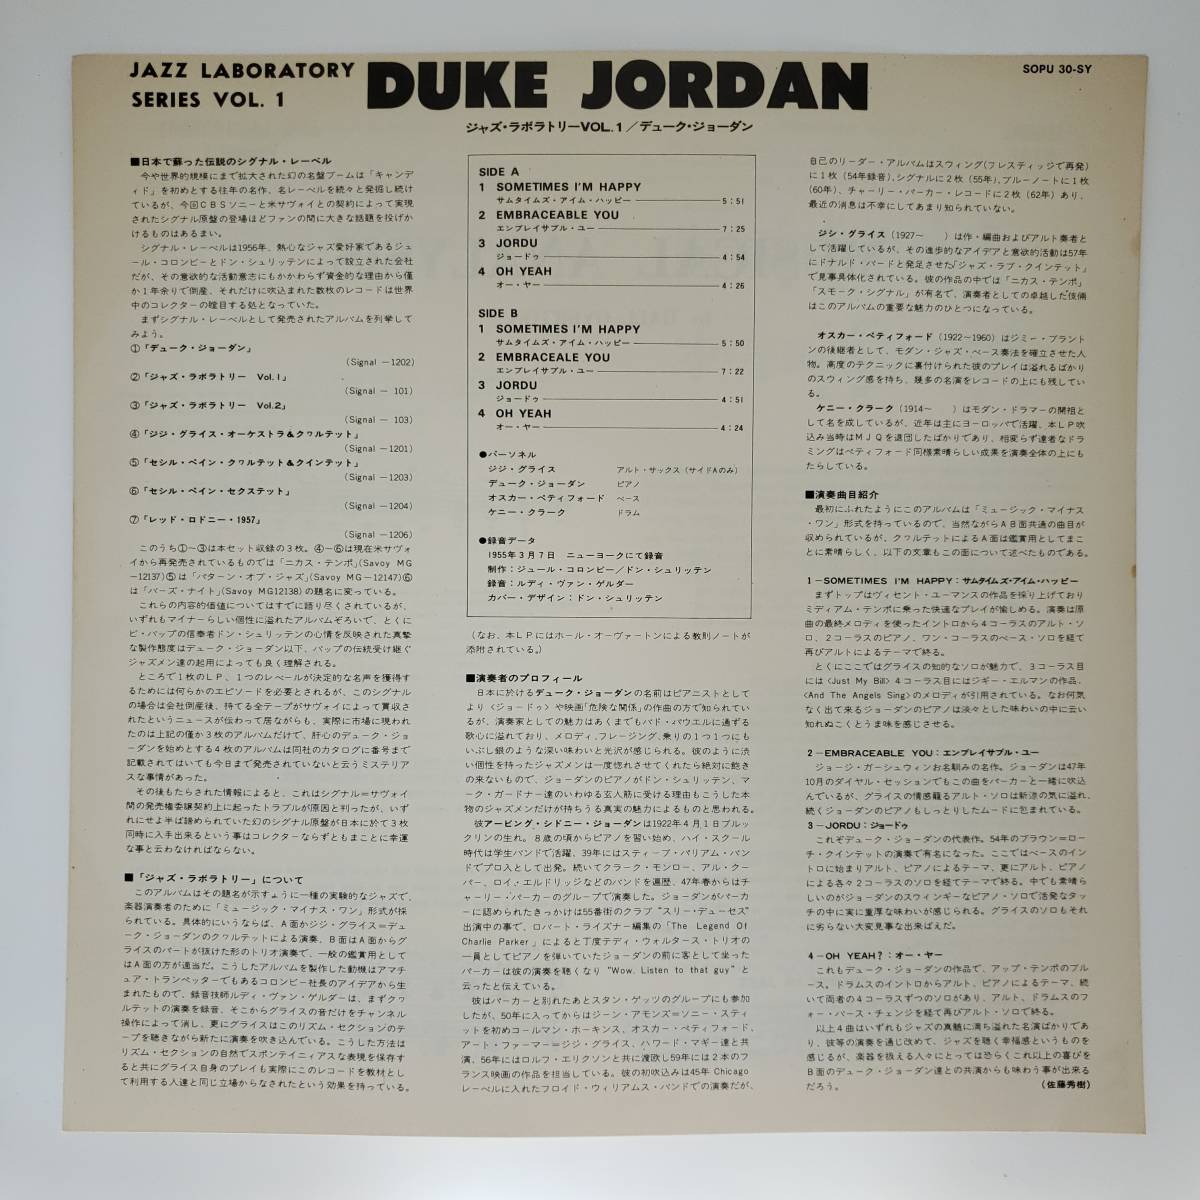 良盤屋◆LP◆Jazz;デューク・ジョーダン/ジャズ・ラボラトリー Vol.1 Duke Jordan/Jazz Laboratory Series Vol.1/1975 ◆Bop◆J-3202の画像4